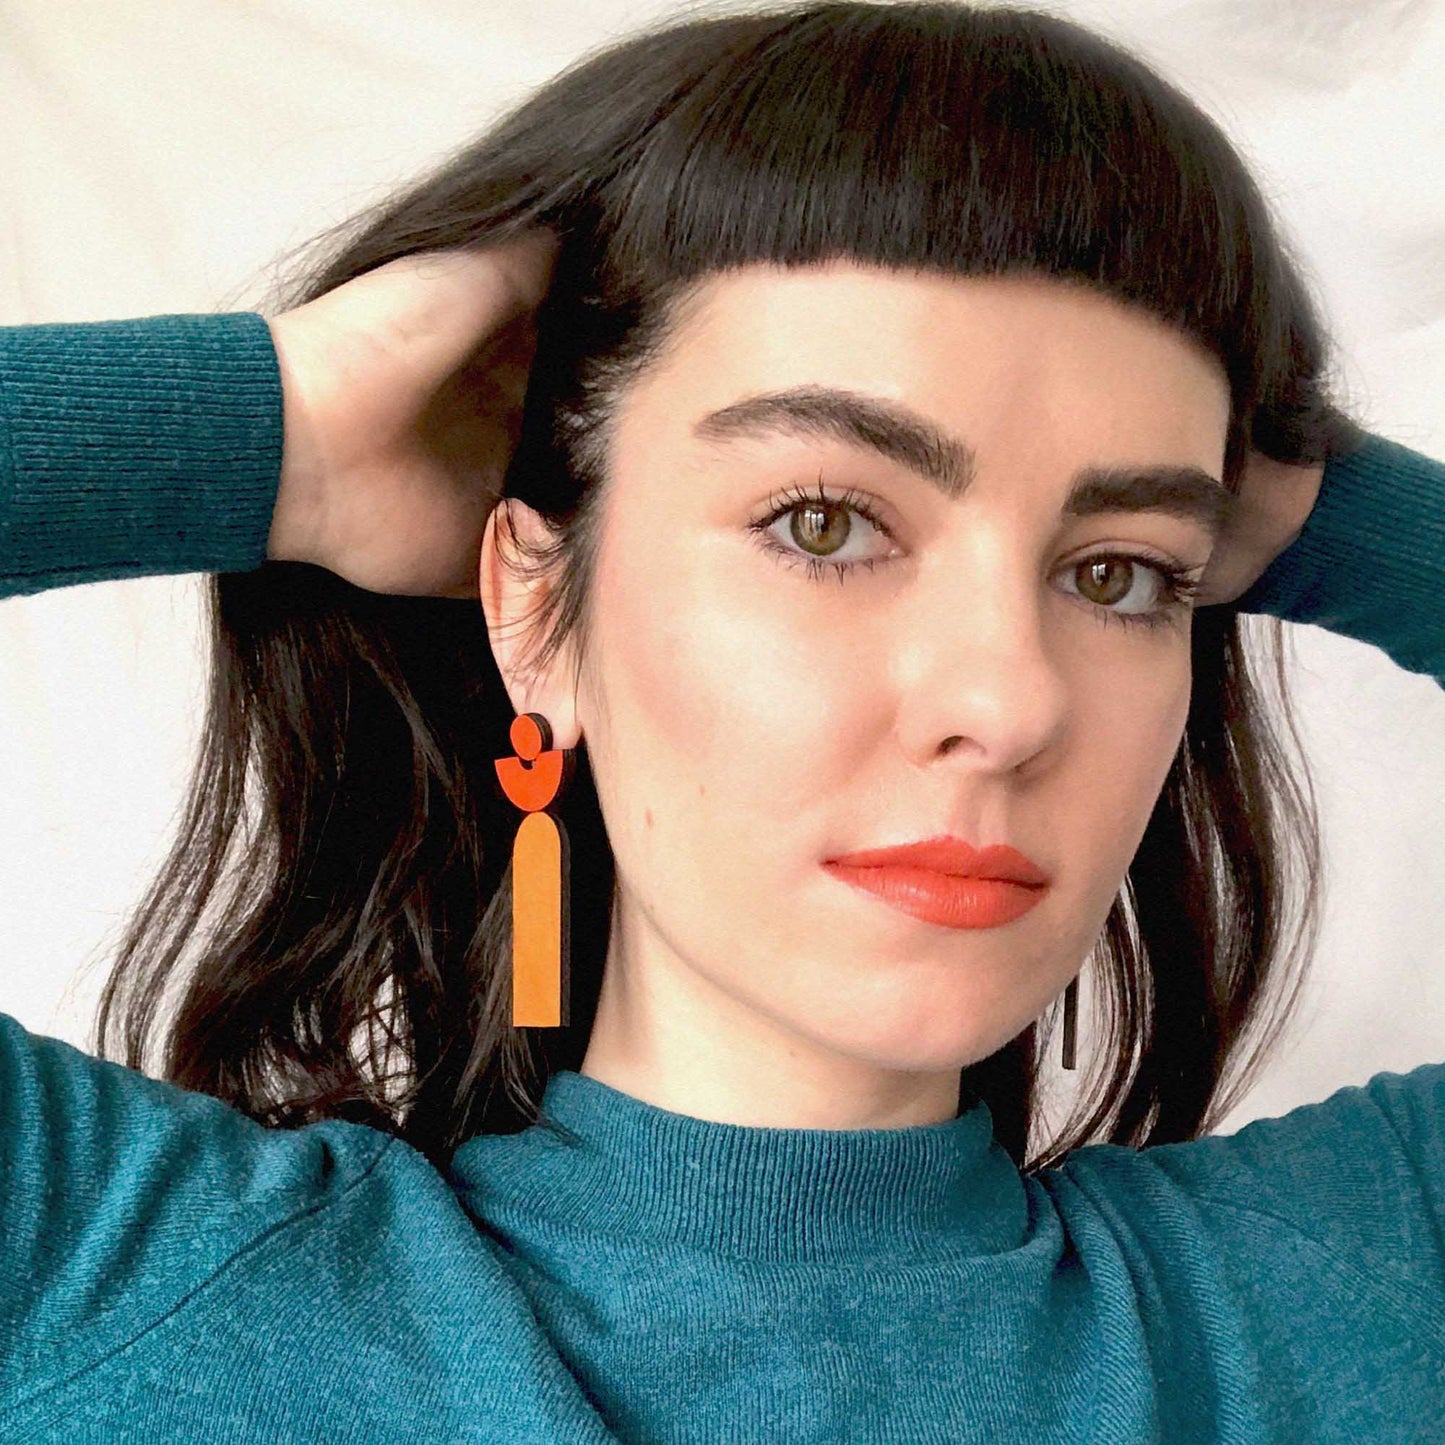 Orkhon Earrings Orange